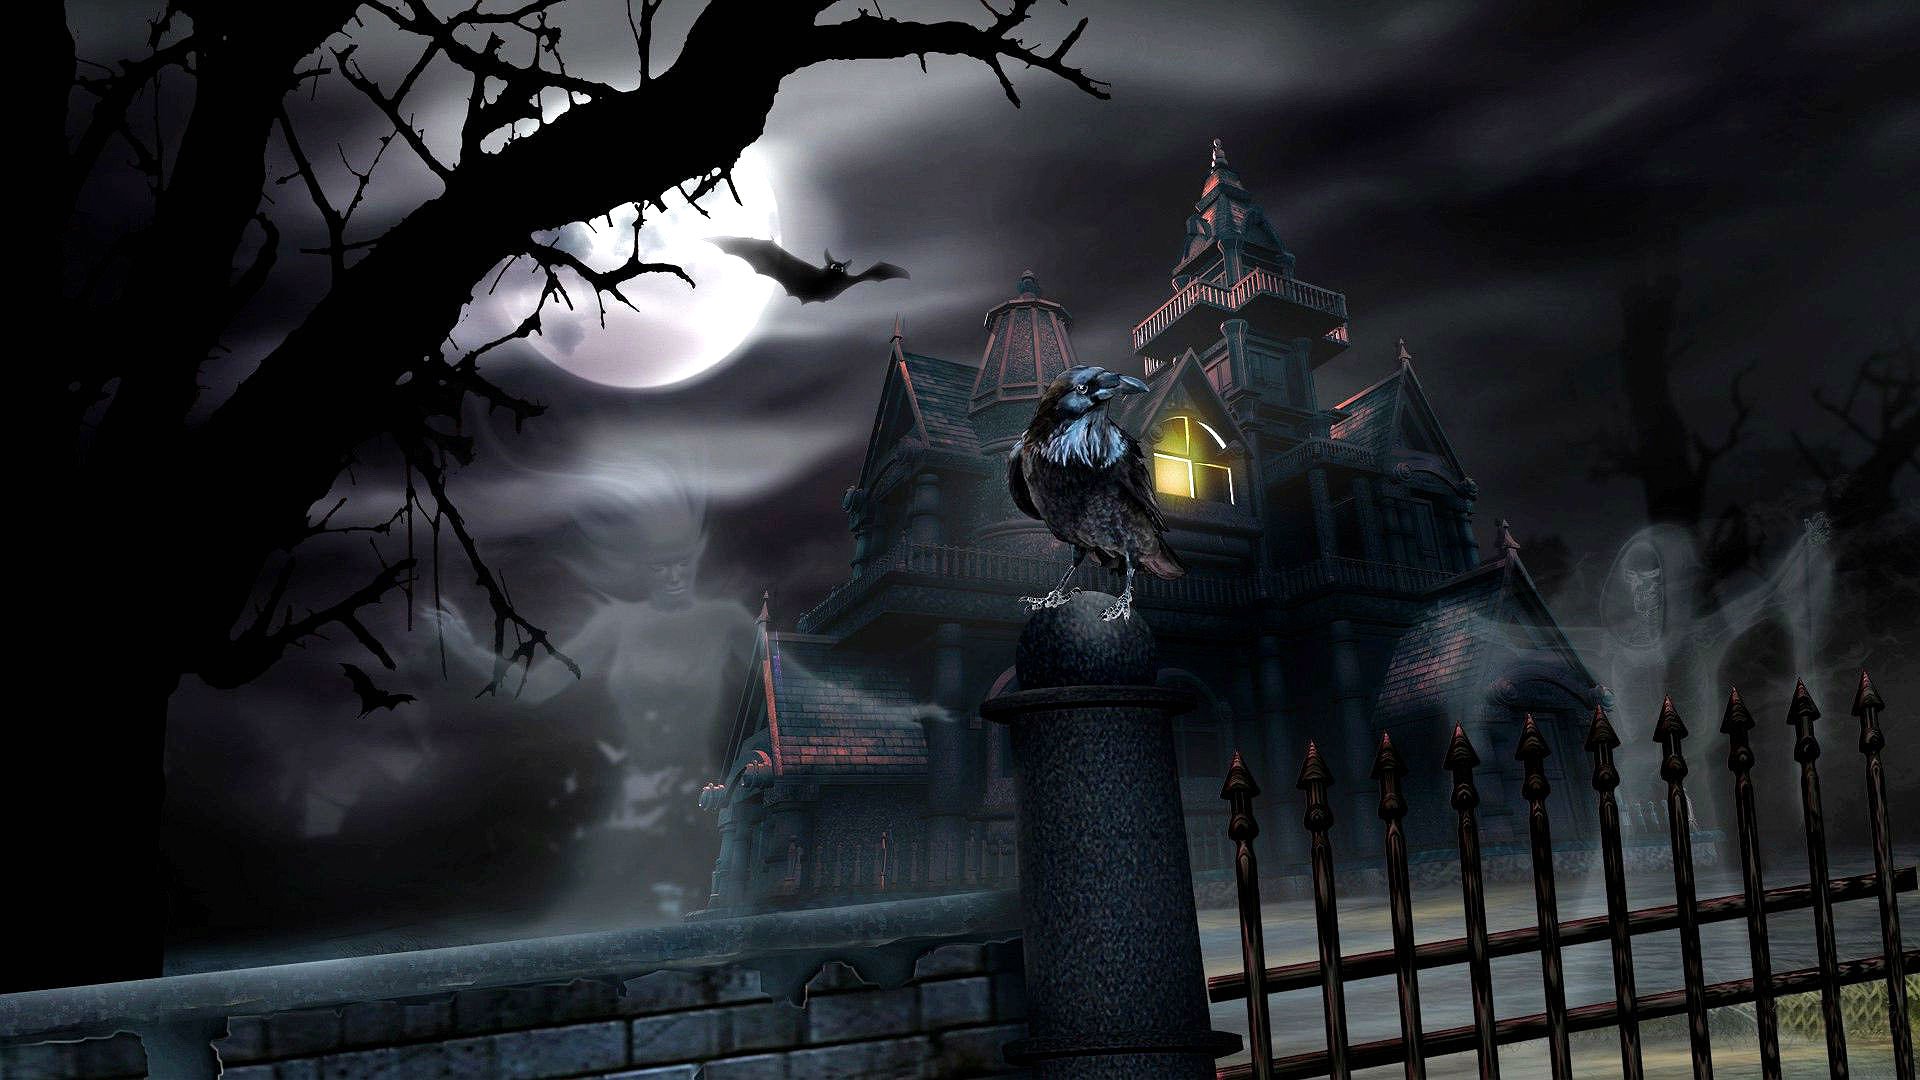 HALLOWEEN dark haunted house spooky wallpaper 1920x1080